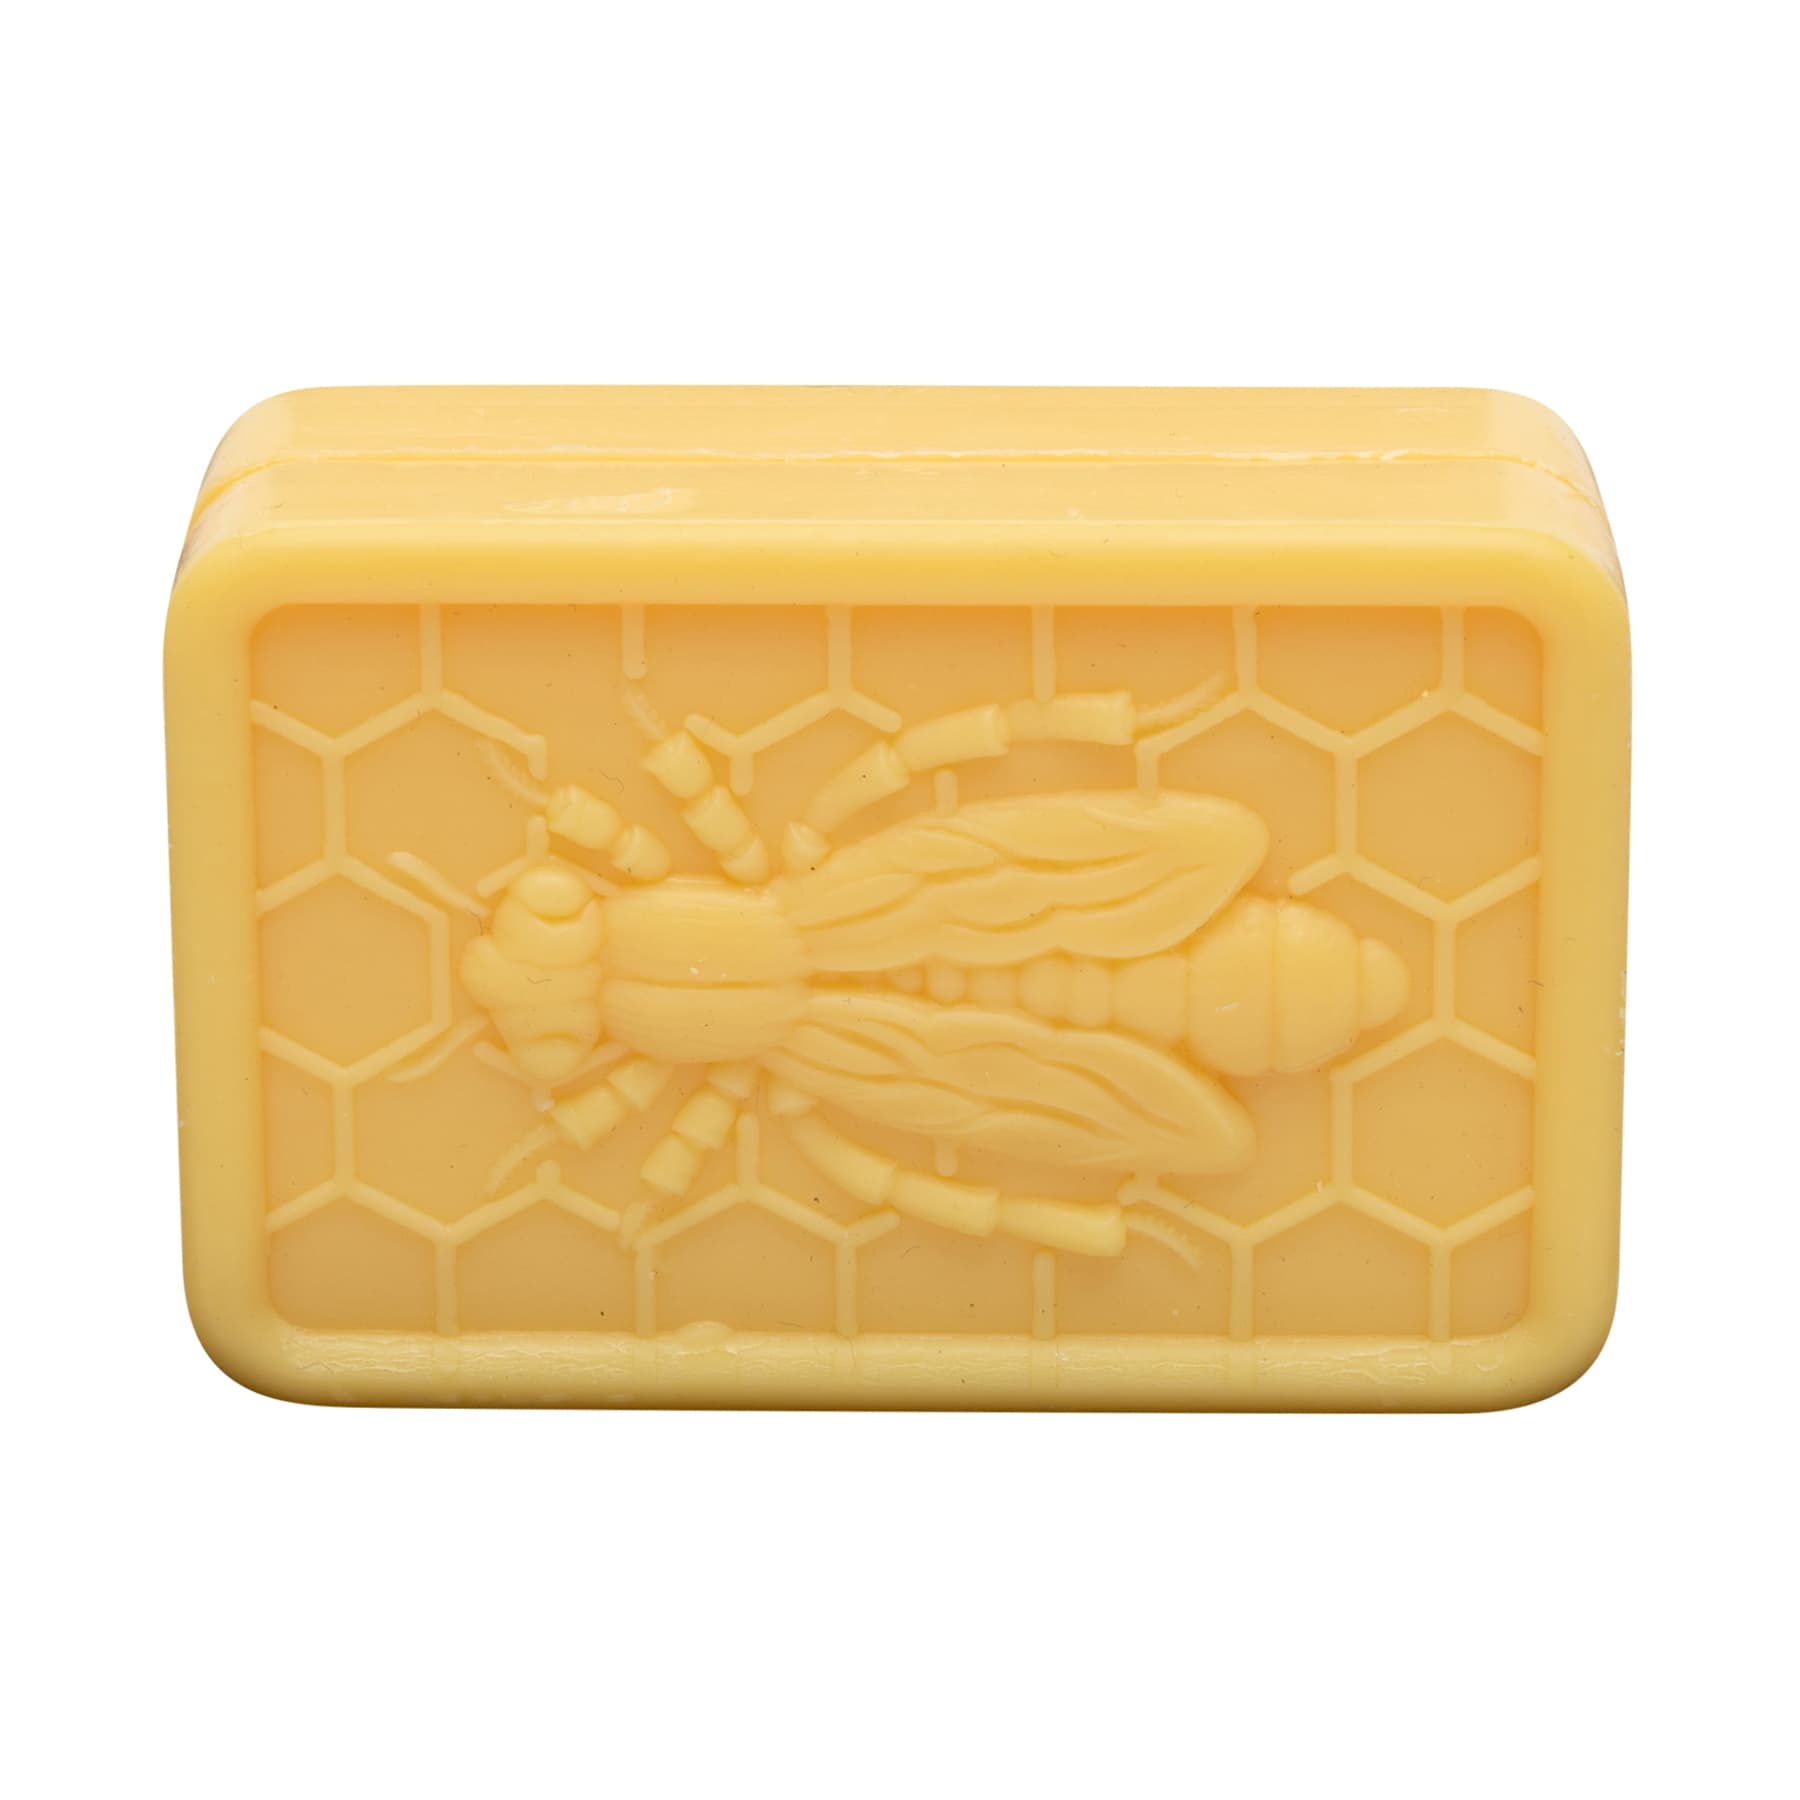 Honig- Lanolin-Seife mit Bienendekor (Quaderform) 100 g unverpackt  Batch 200132 mit beigelegtem Etikett